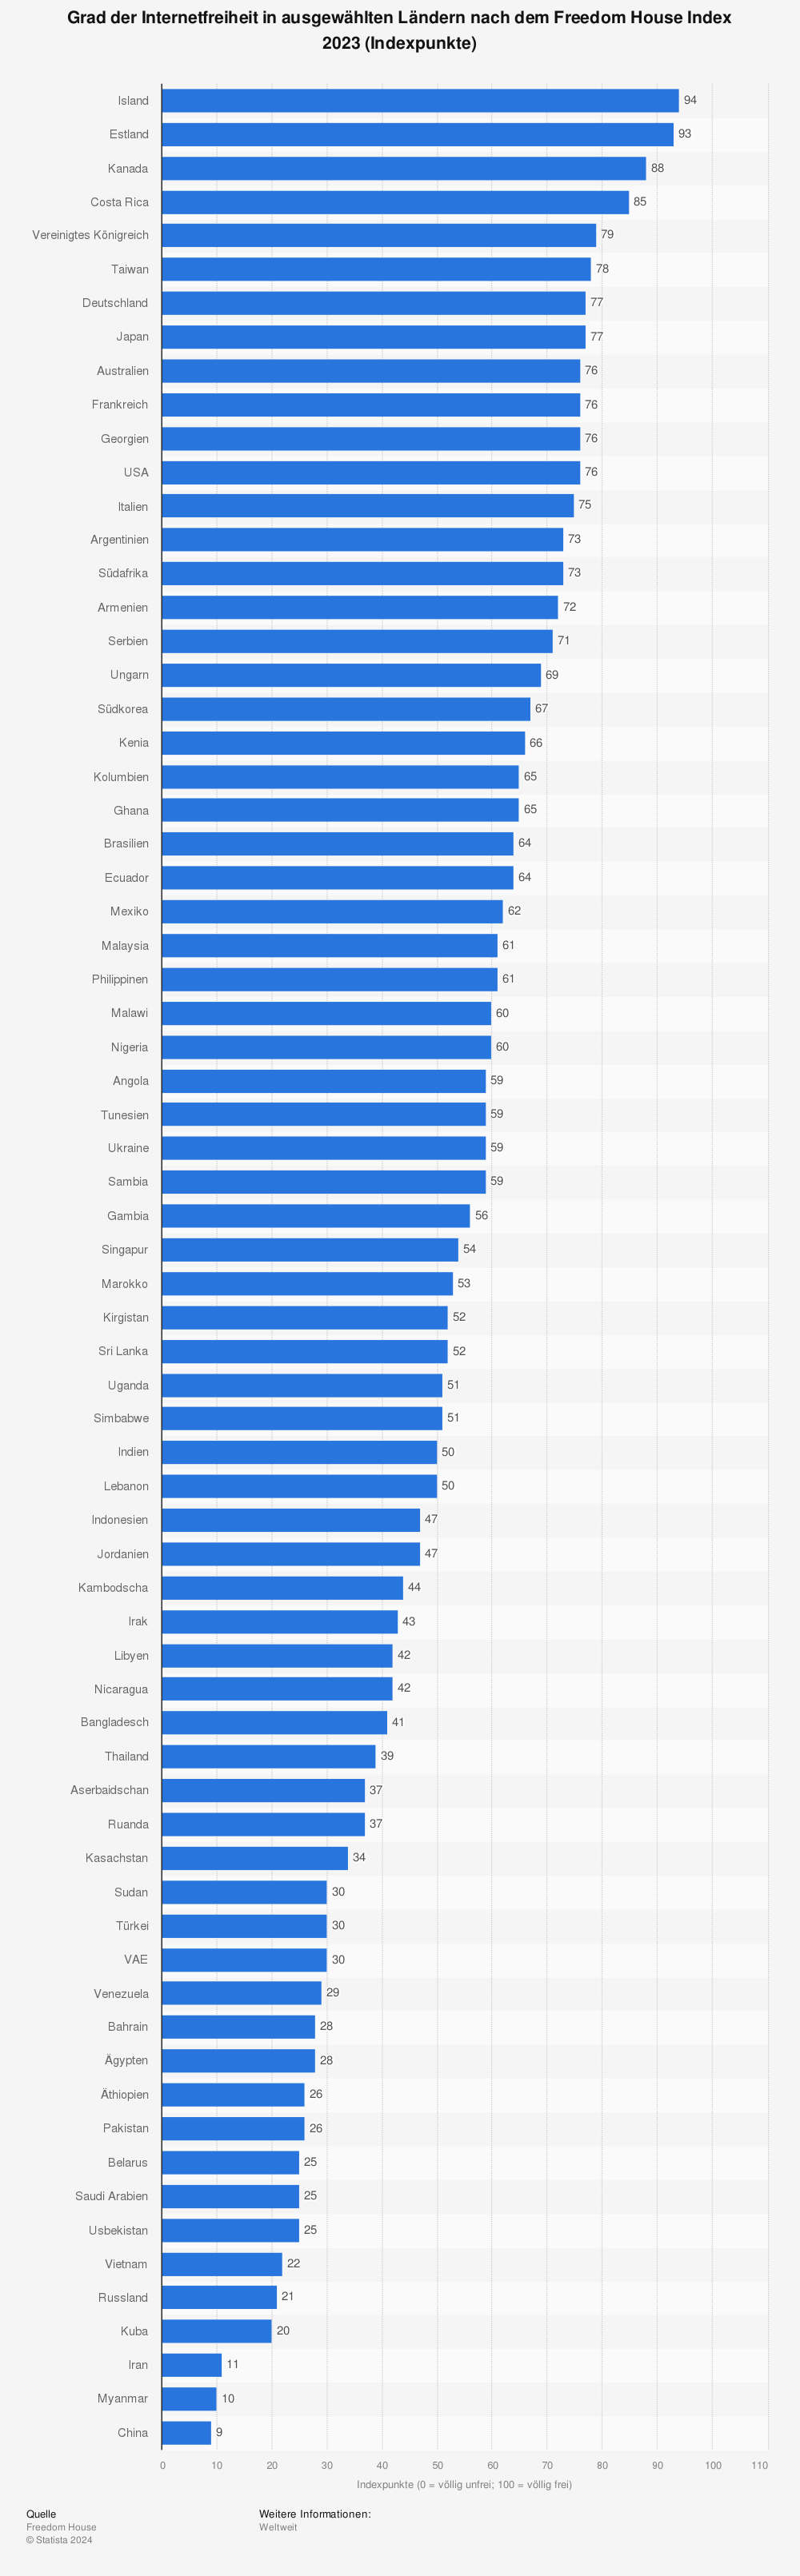 Statistik: Grad der Internetfreiheit in ausgewählten Ländern nach dem Freedom House Index 2022 (Indexpunkte) | Statista